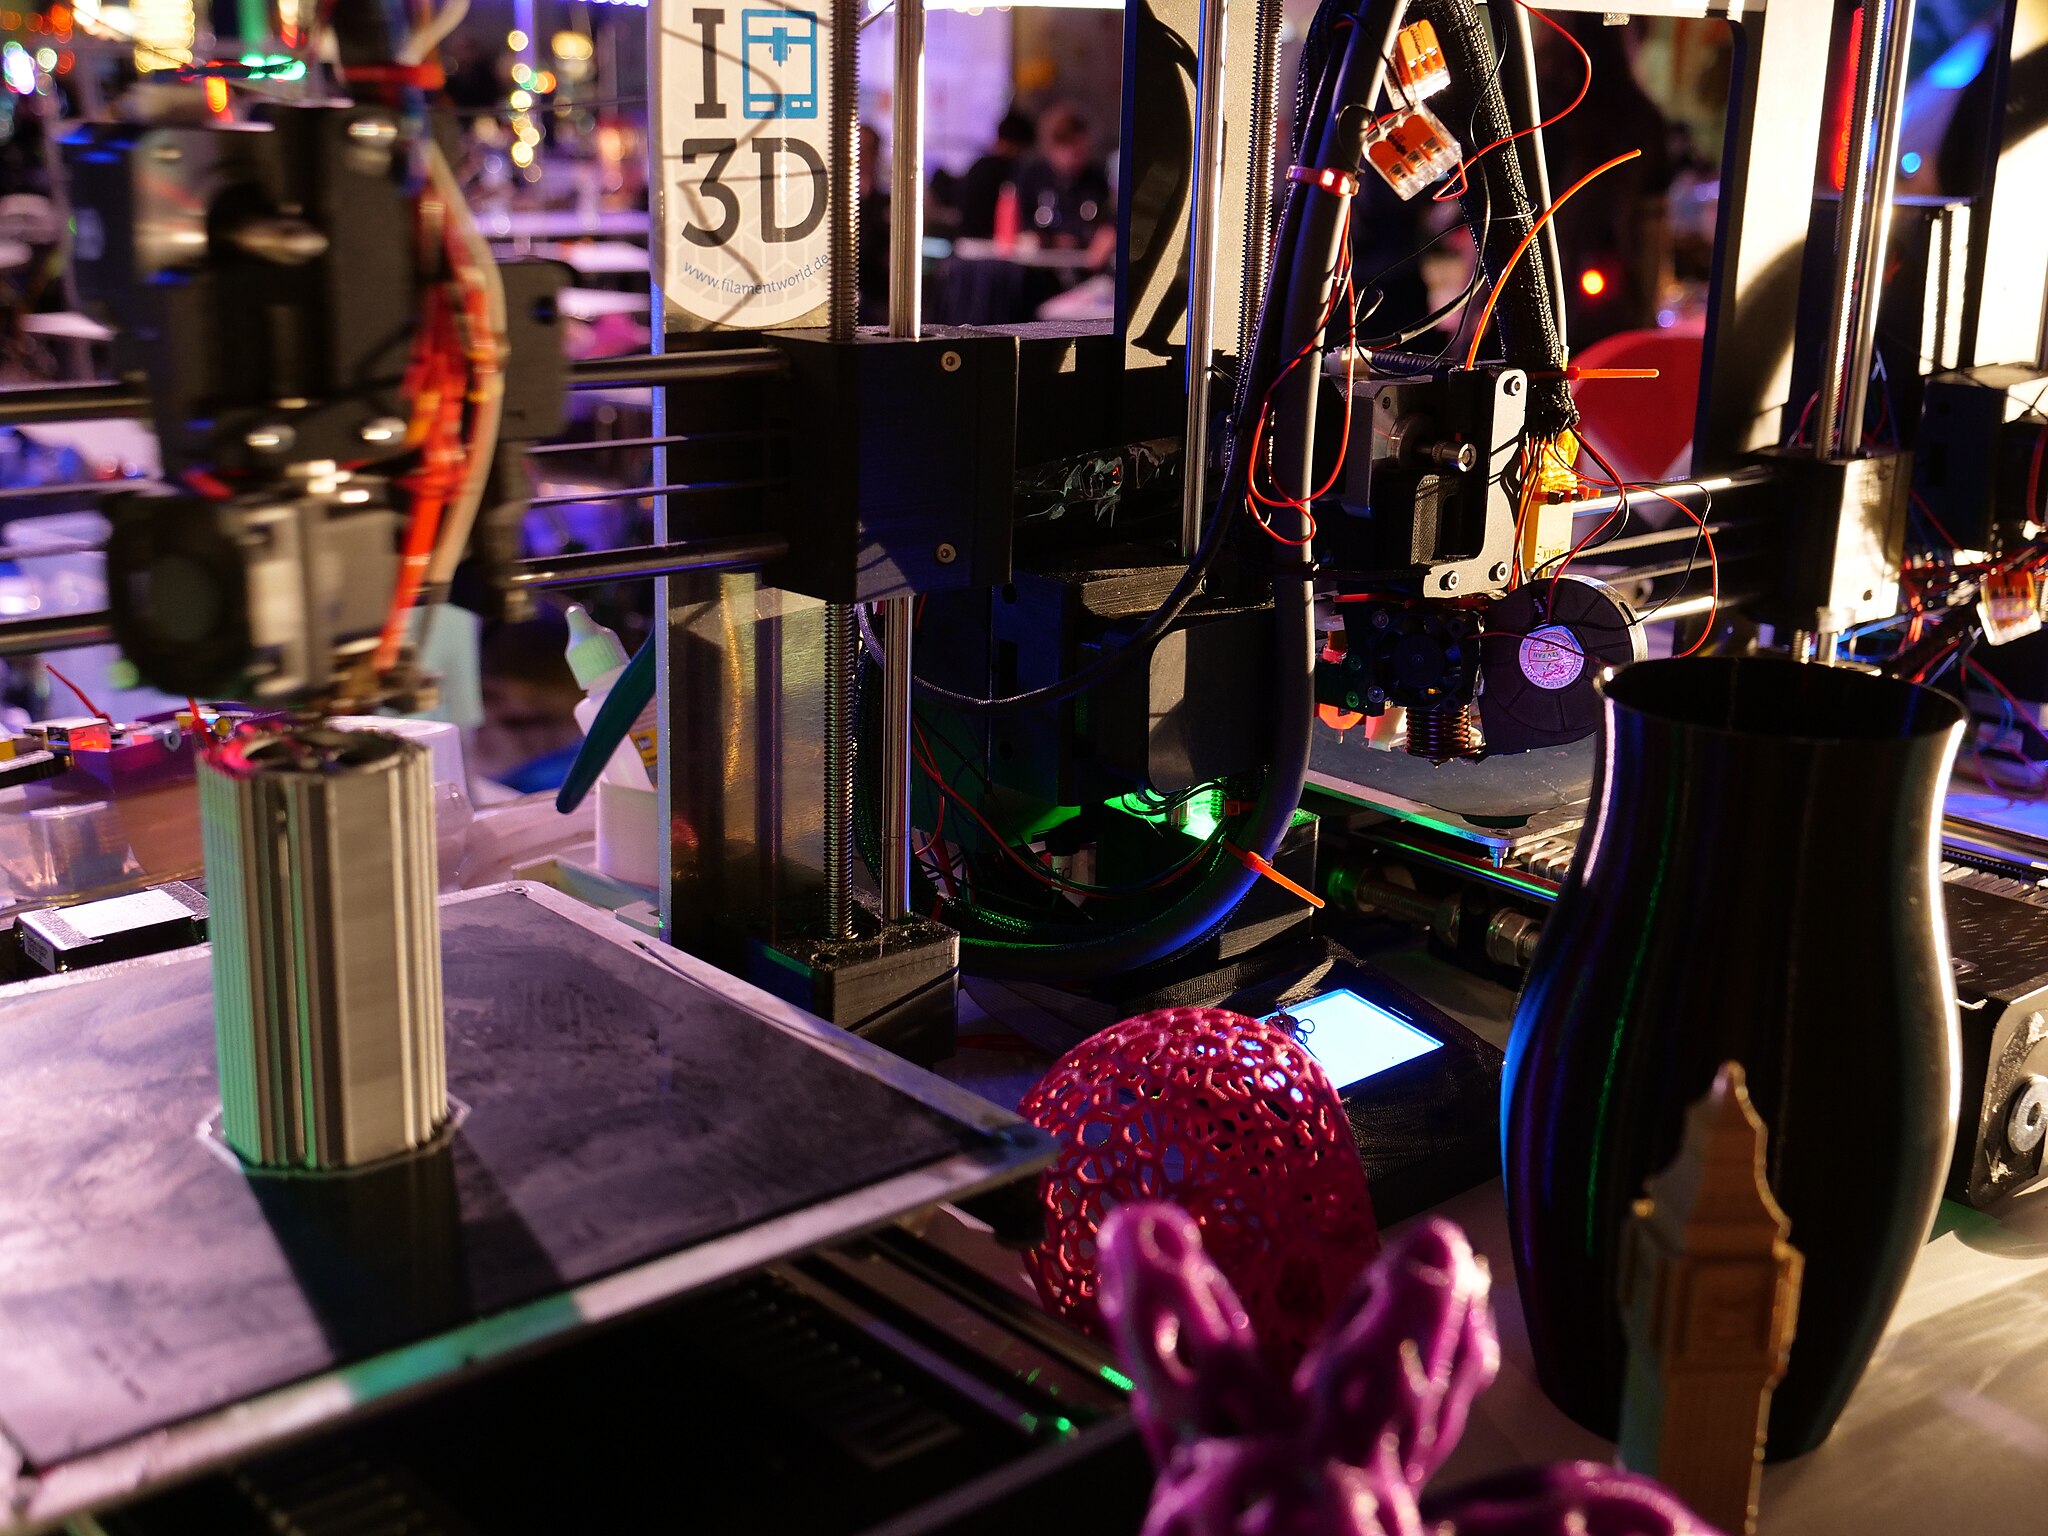 La tecnología de impresión 3D tiene cada vez más aplicaciones en distintas industrias. Foto: Leonhard Lenz/ CC BY-SA 4.0 via Wikimedia Commons.